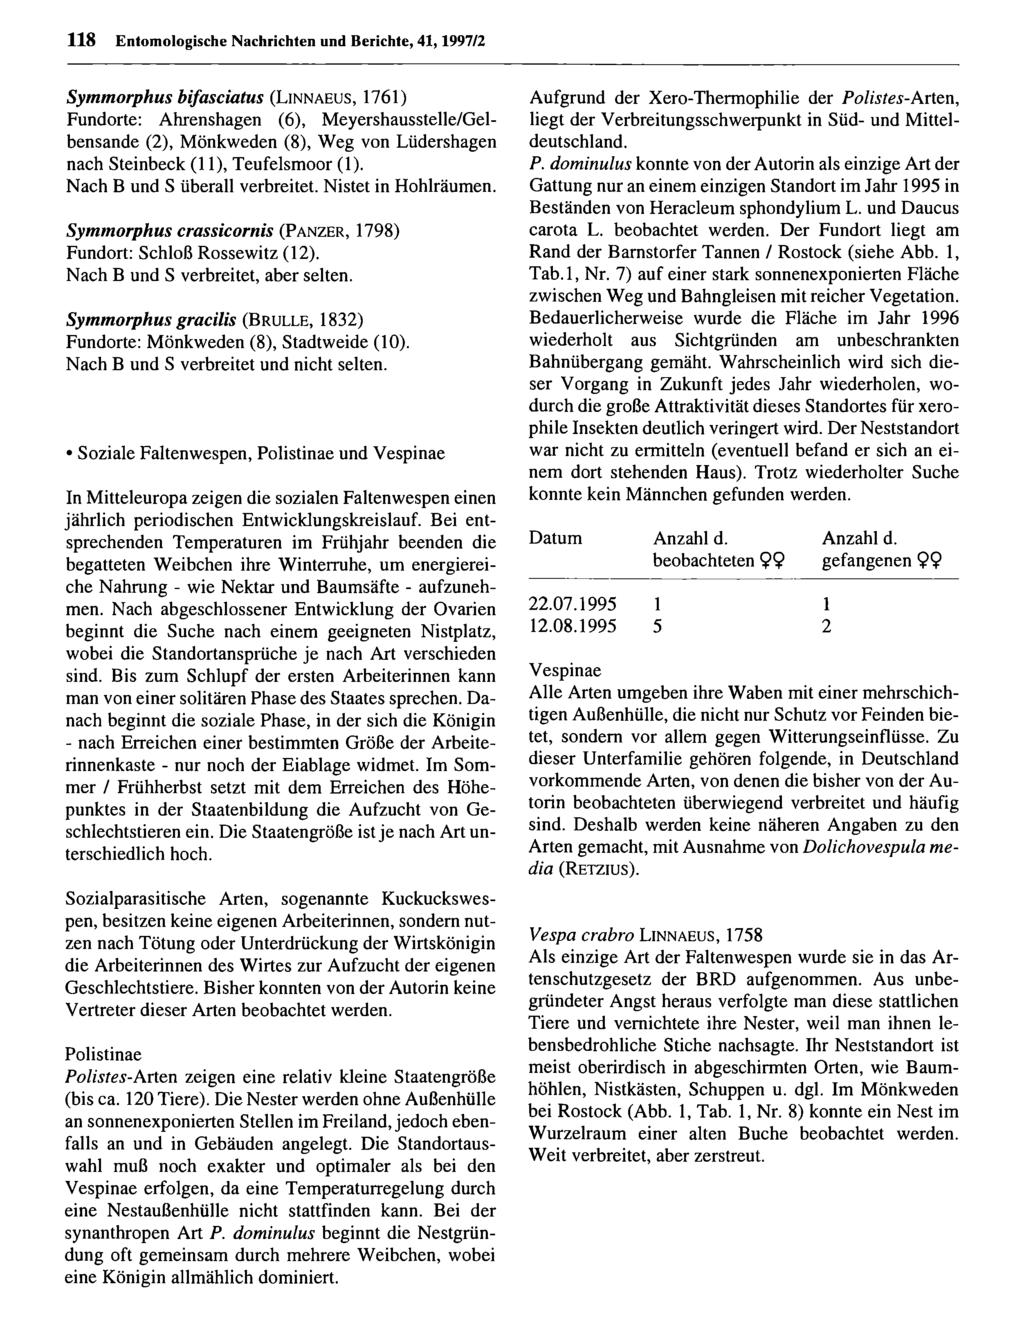 118 Entom ologische Nachrichten Entomologische und Berichte, Nachrichten 41,1997/2 und Berichte; download unter www.biologiezentrum.